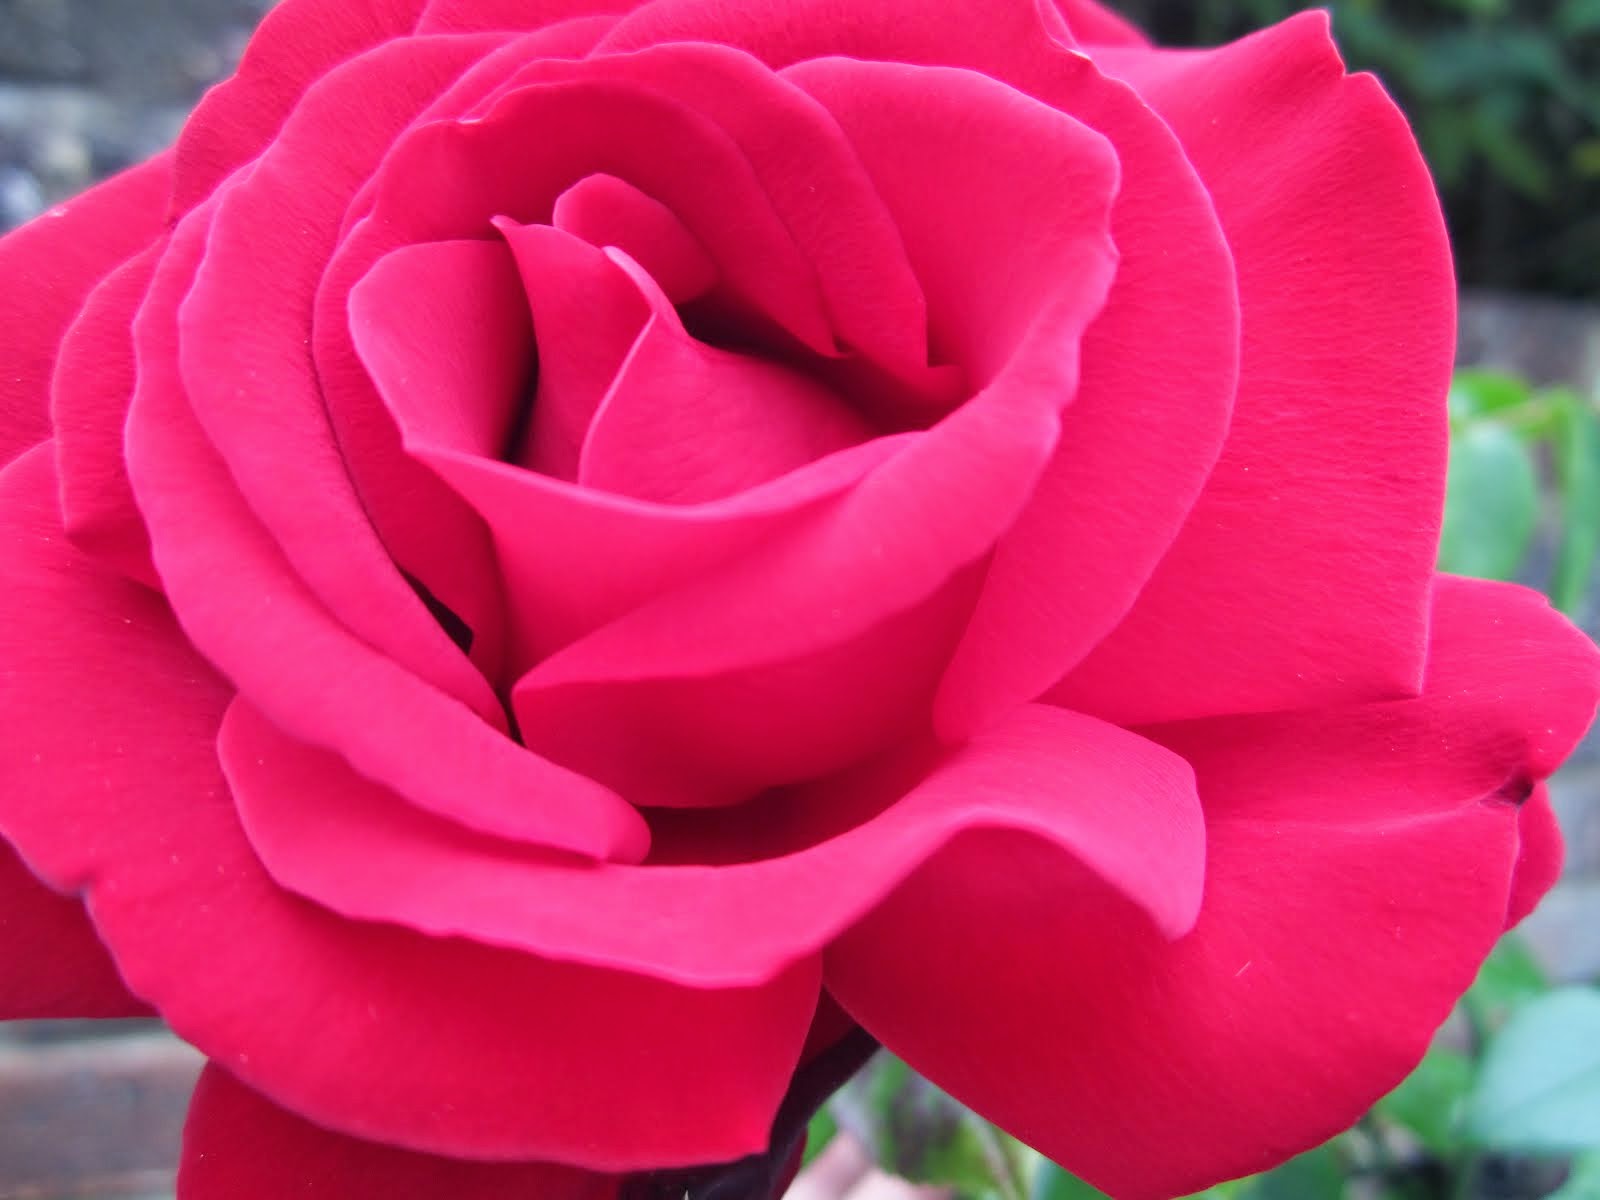 Velvety red rose x